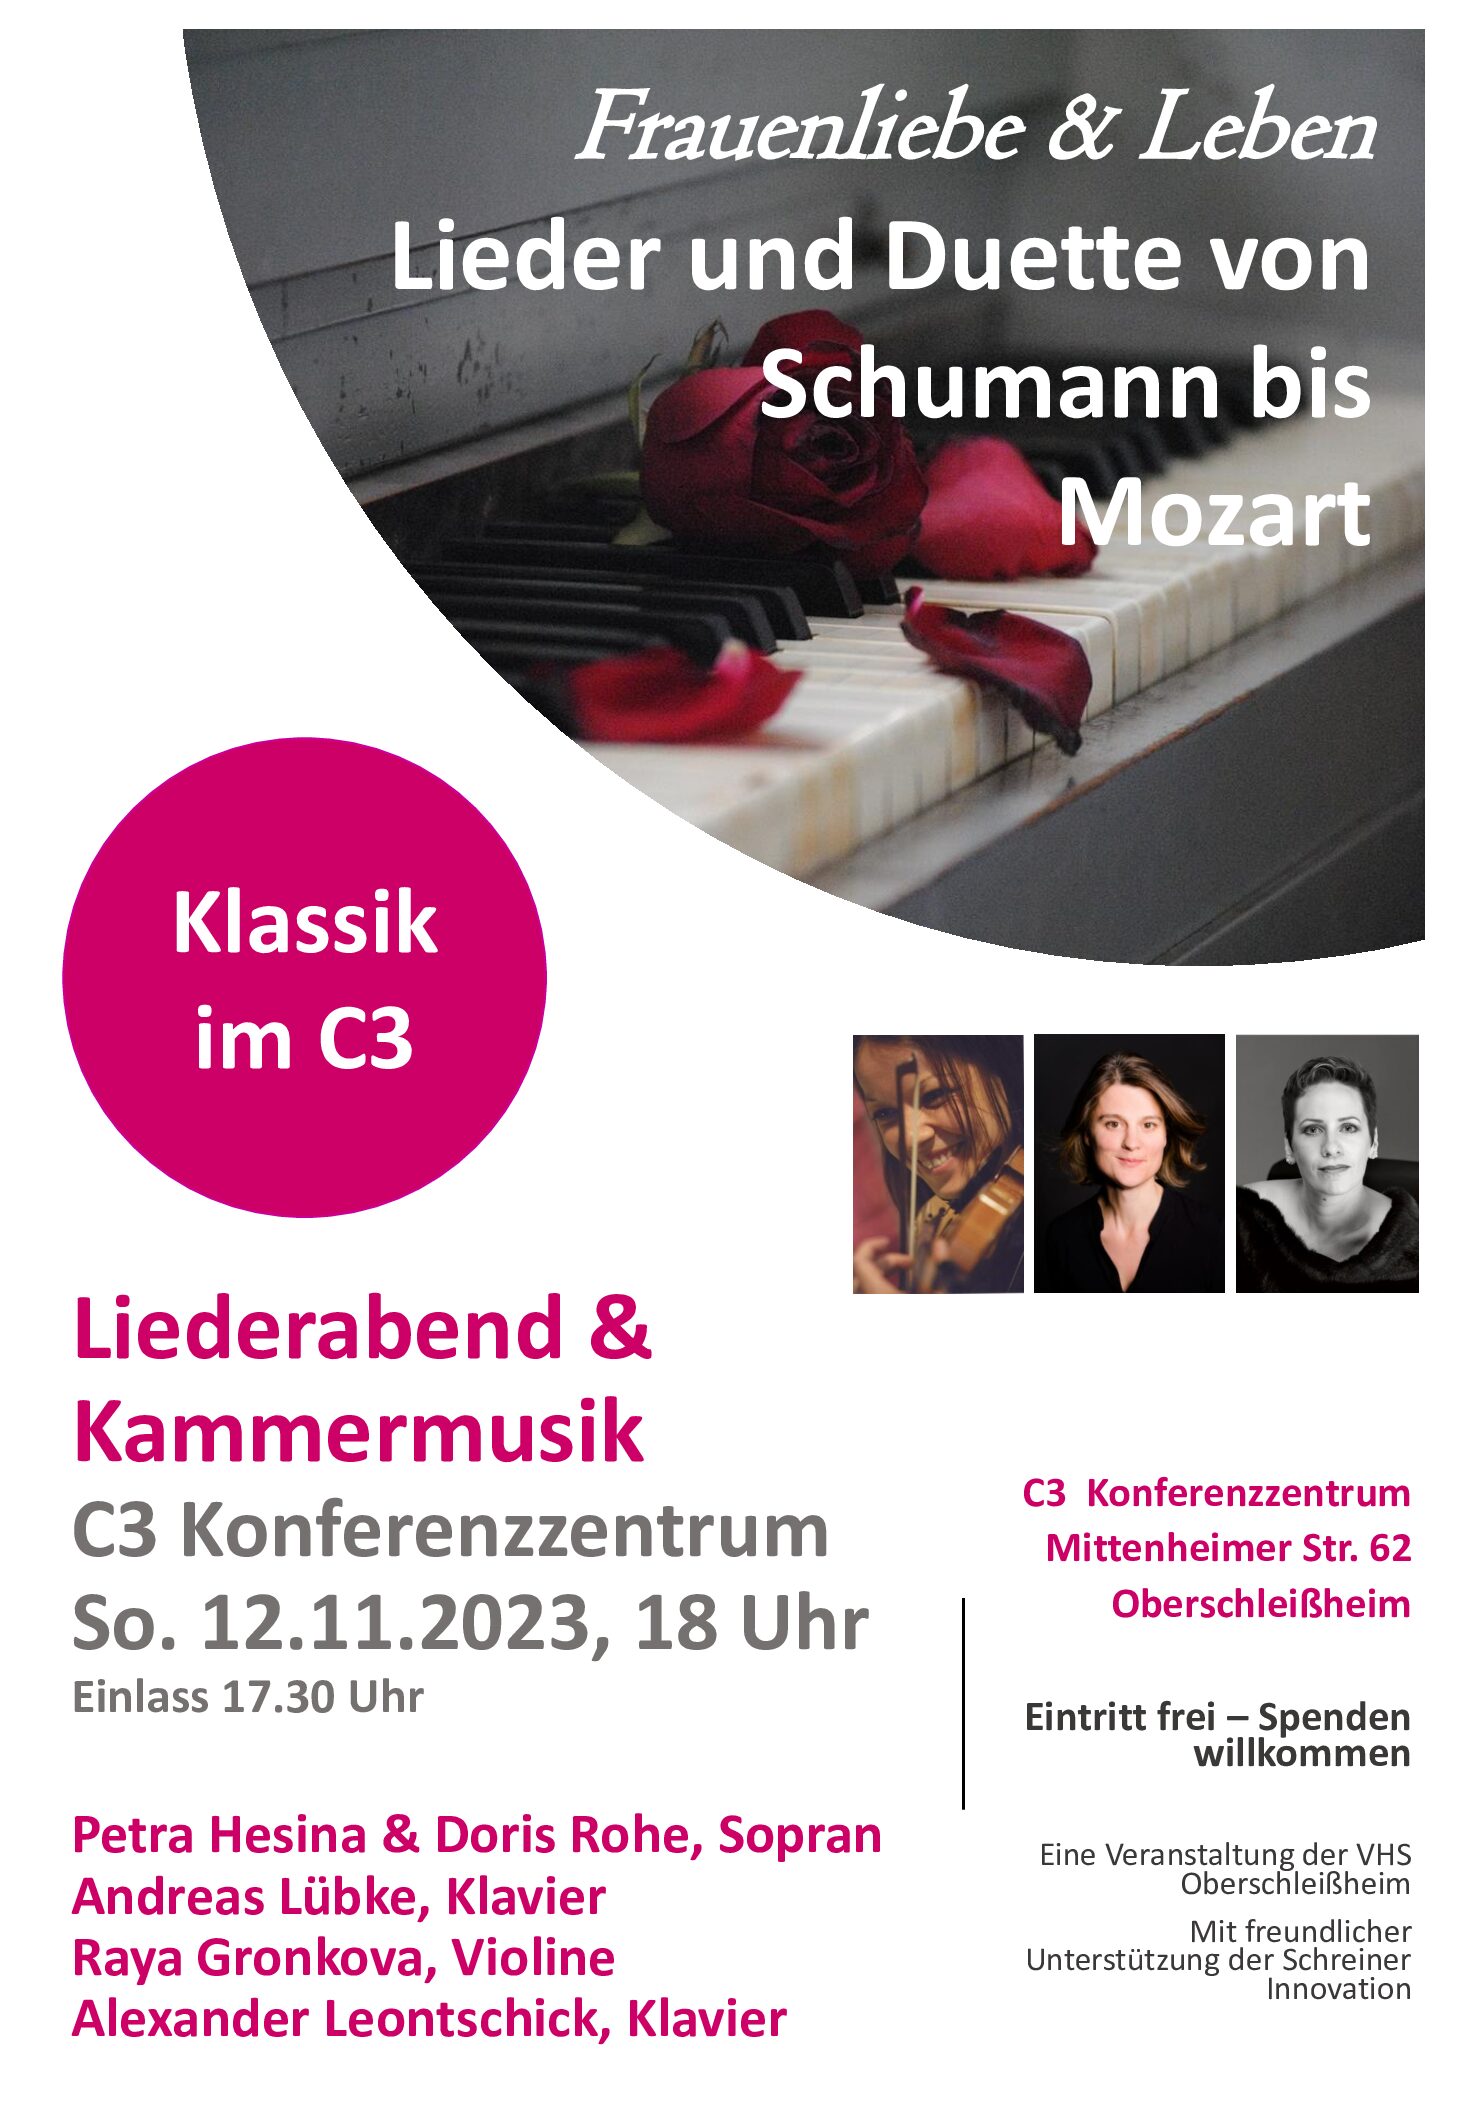 Frauenliebe & Leben: Lieder und Duette von Schumann bis Mozart